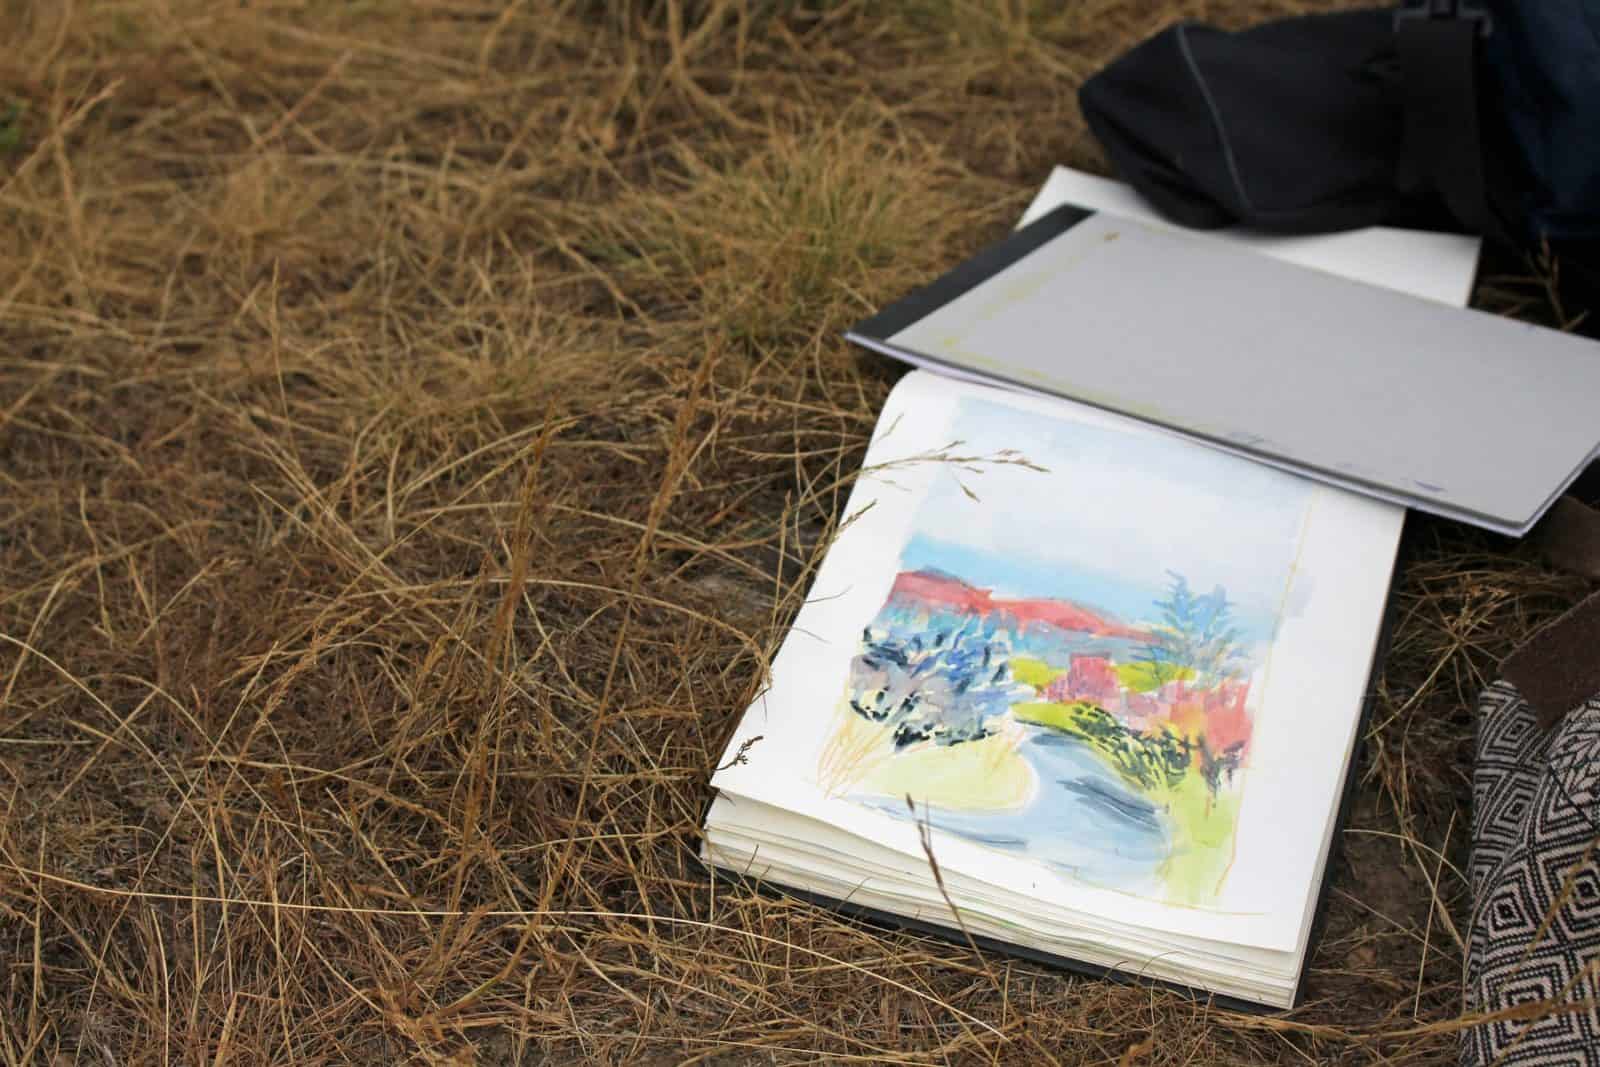 Sketchbook in a field